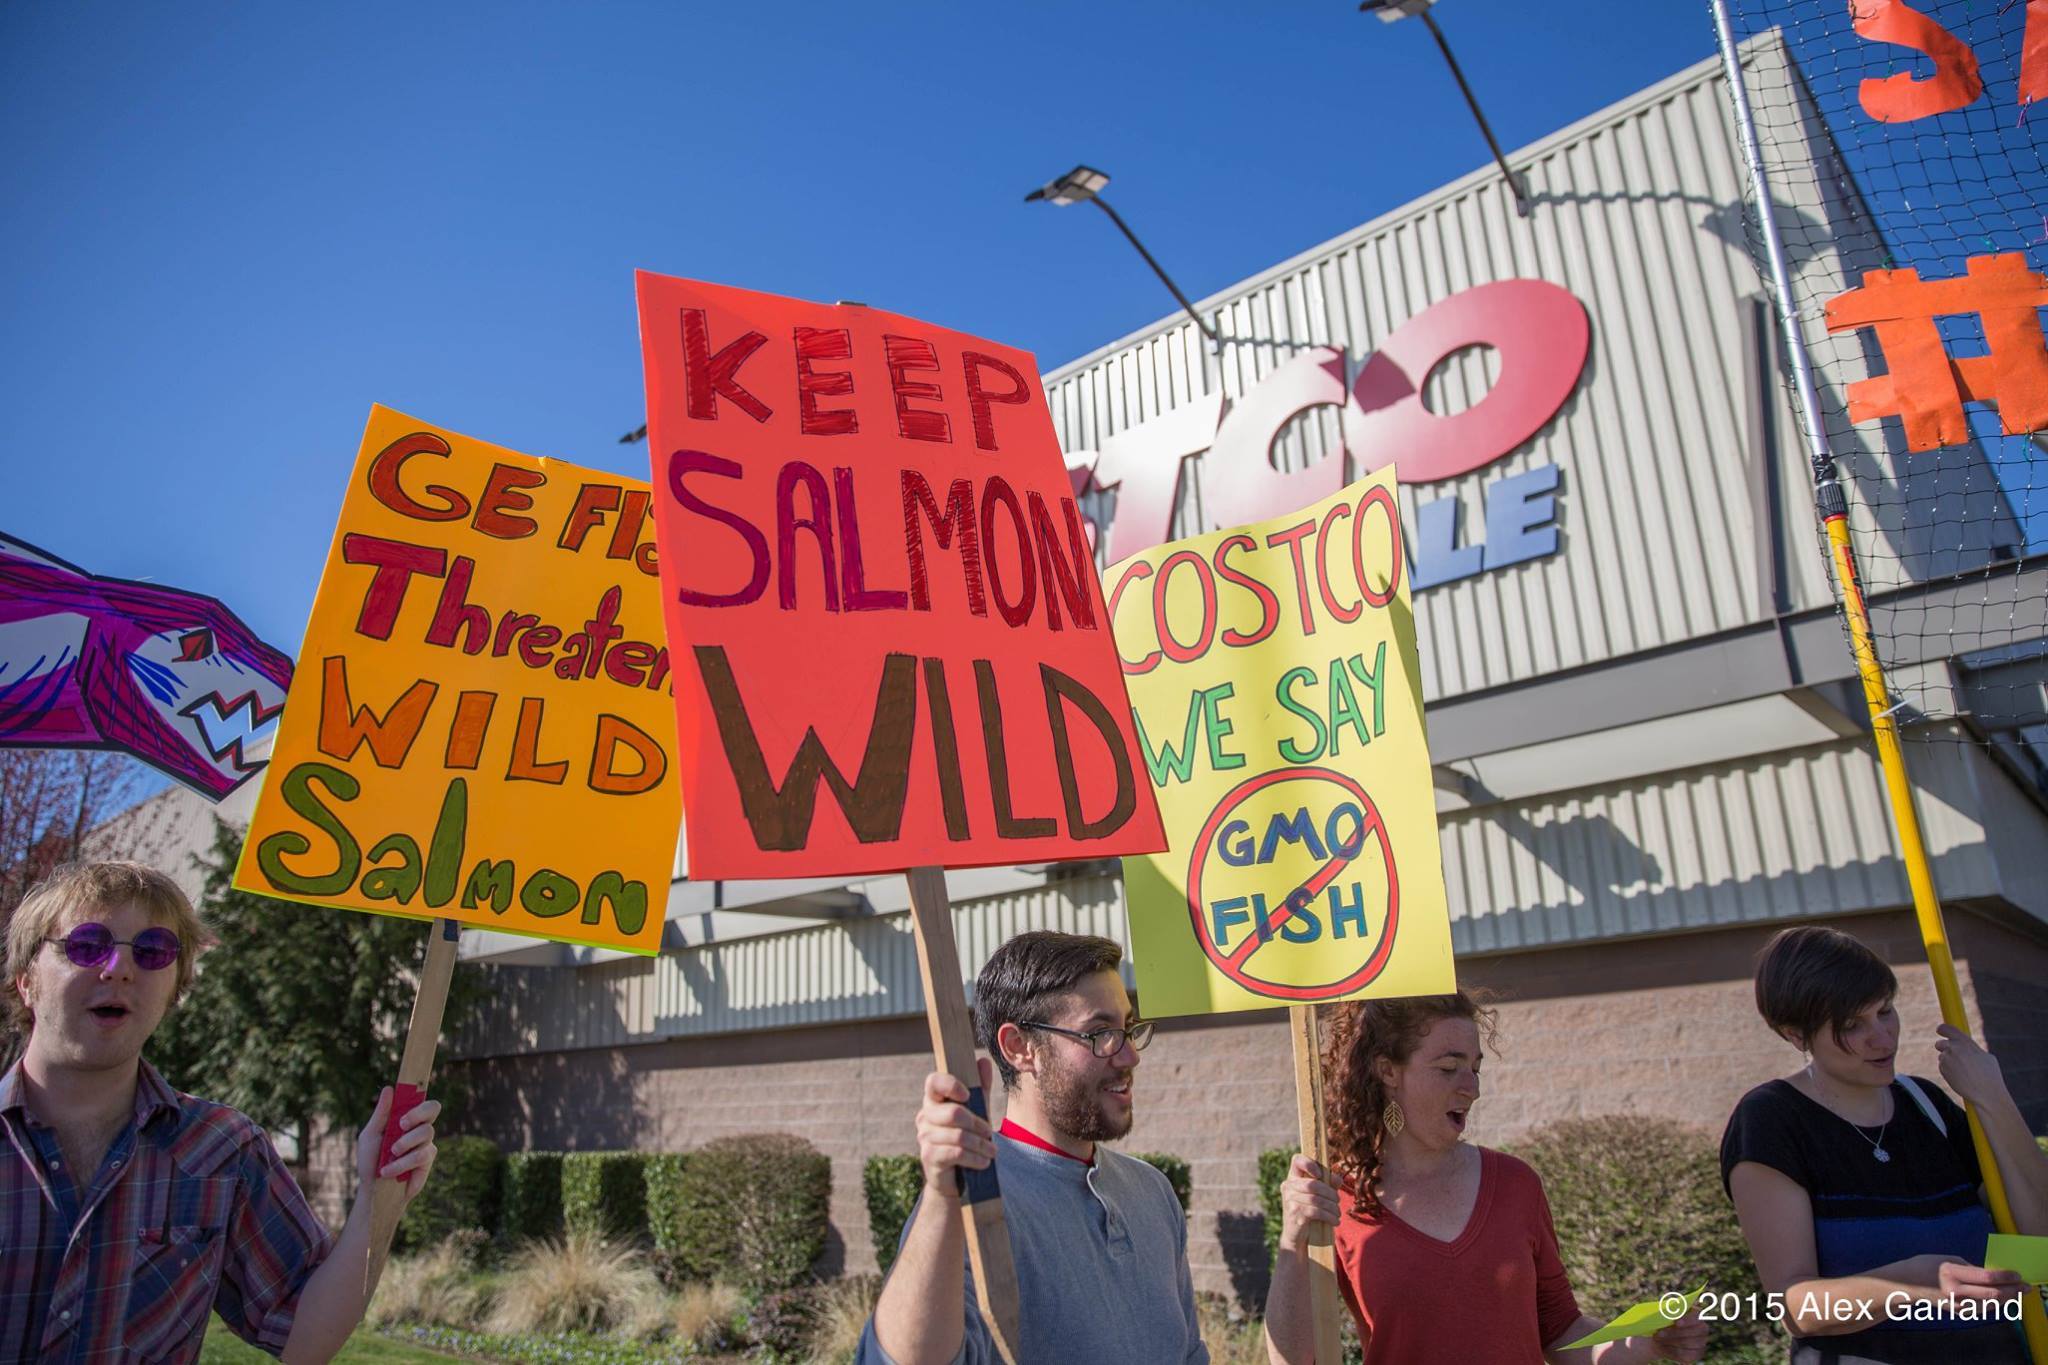 Will Costco be the GMO salmon store?